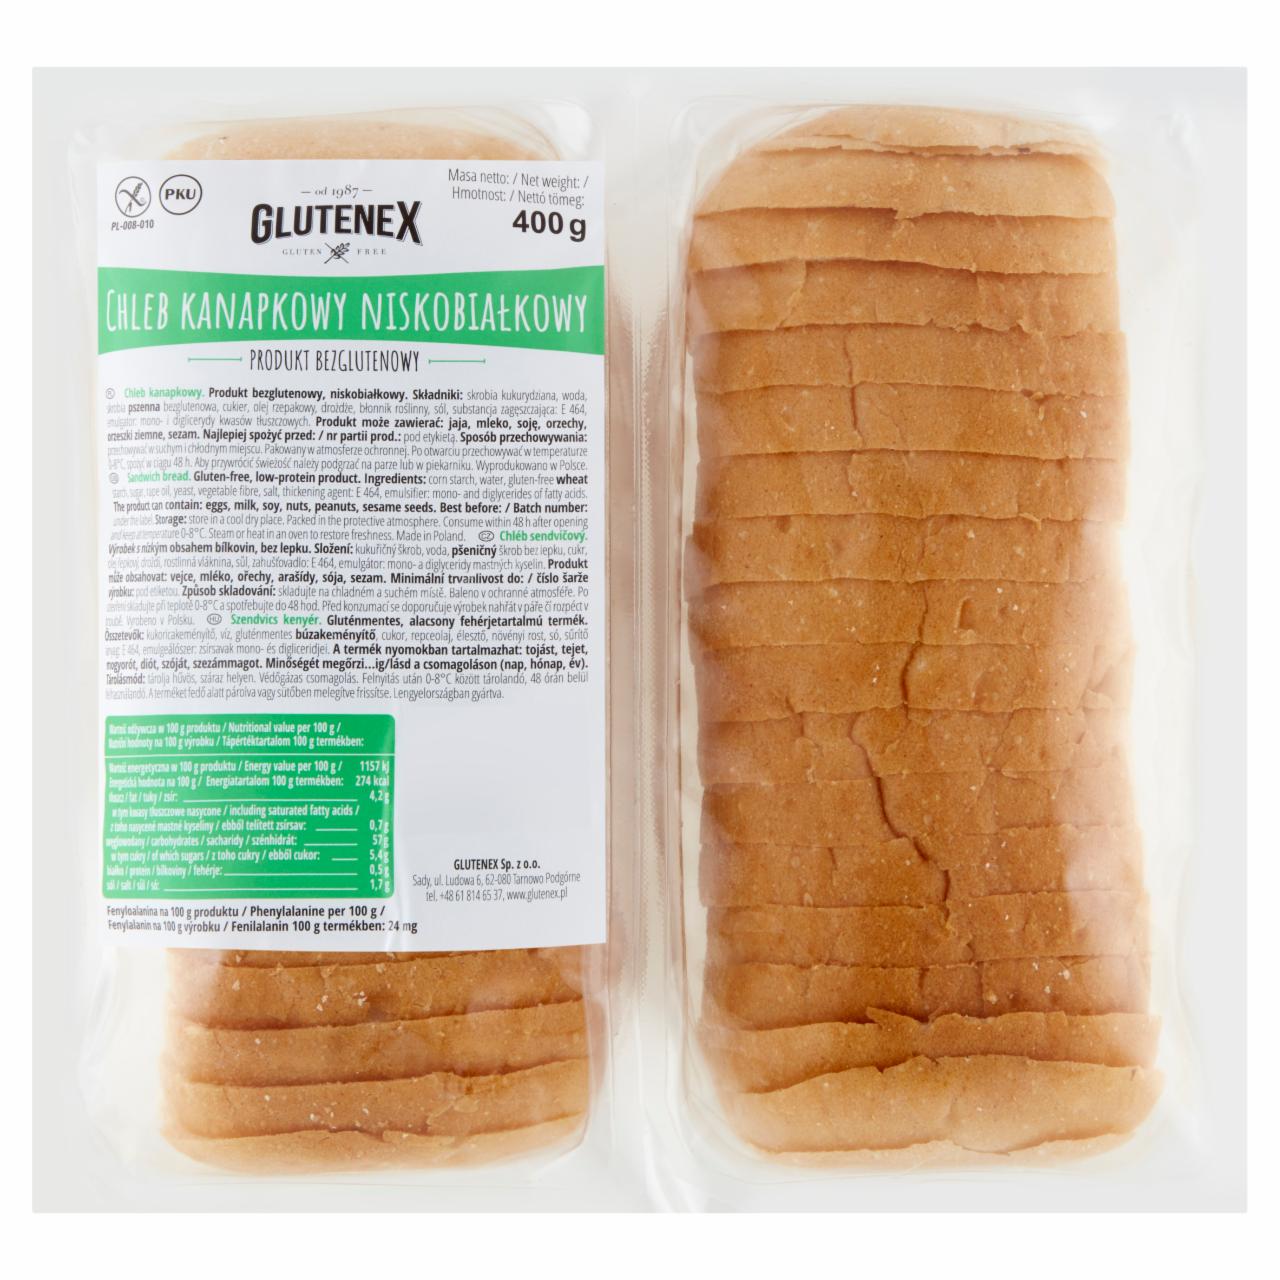 Zdjęcia - Glutenex Chleb kanapkowy niskobiałkowy 400 g